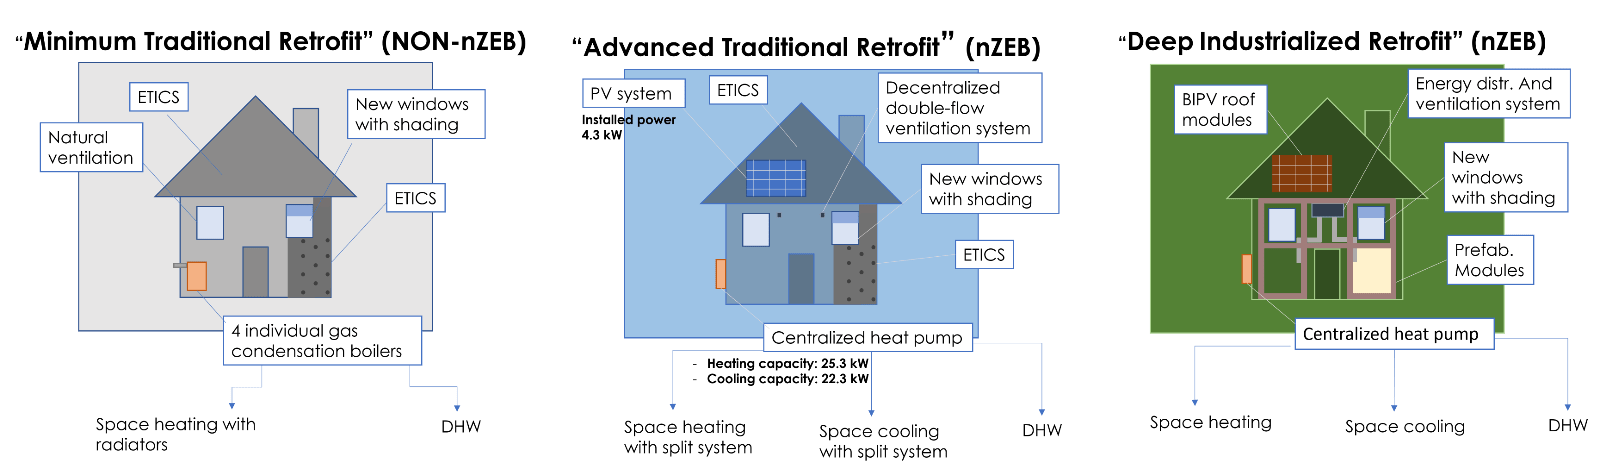 Schemes of the retrofit scenarios’ main features.